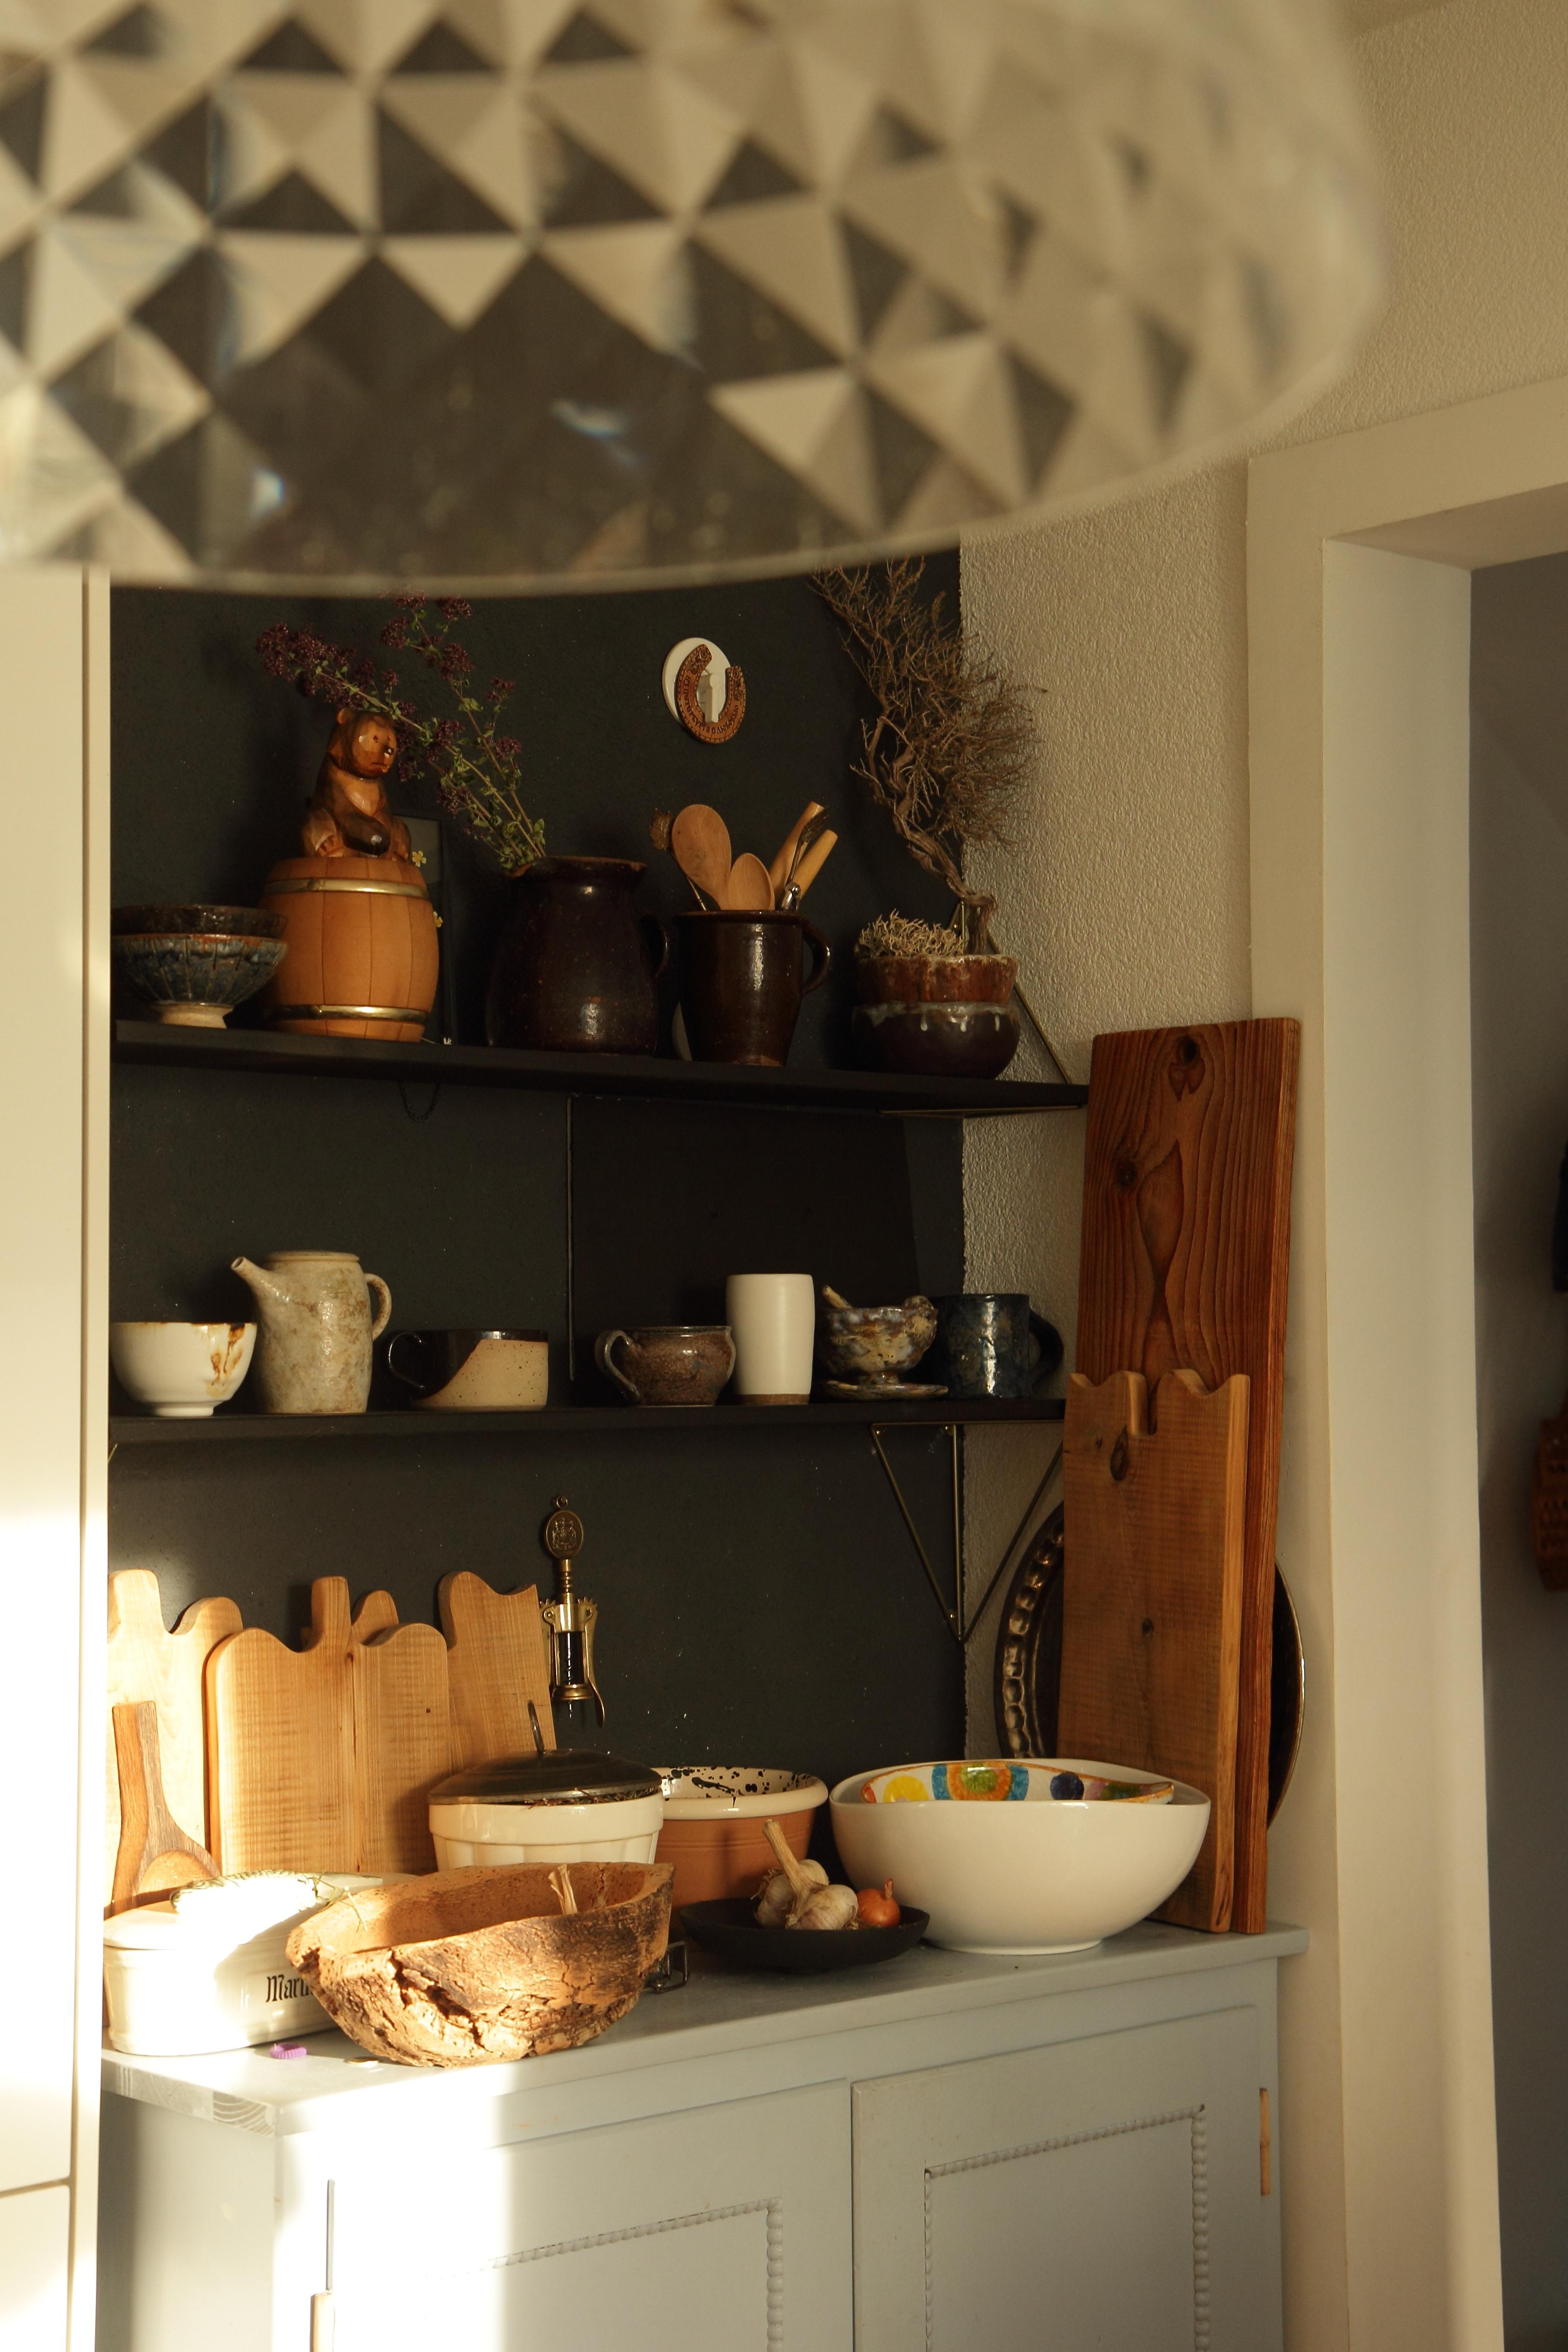 #küche #kitcheninspo #kitchen
Wenn dich nach der Rückkehr aus dem Urlaub die Sonne in der Küche begrüßt.😍